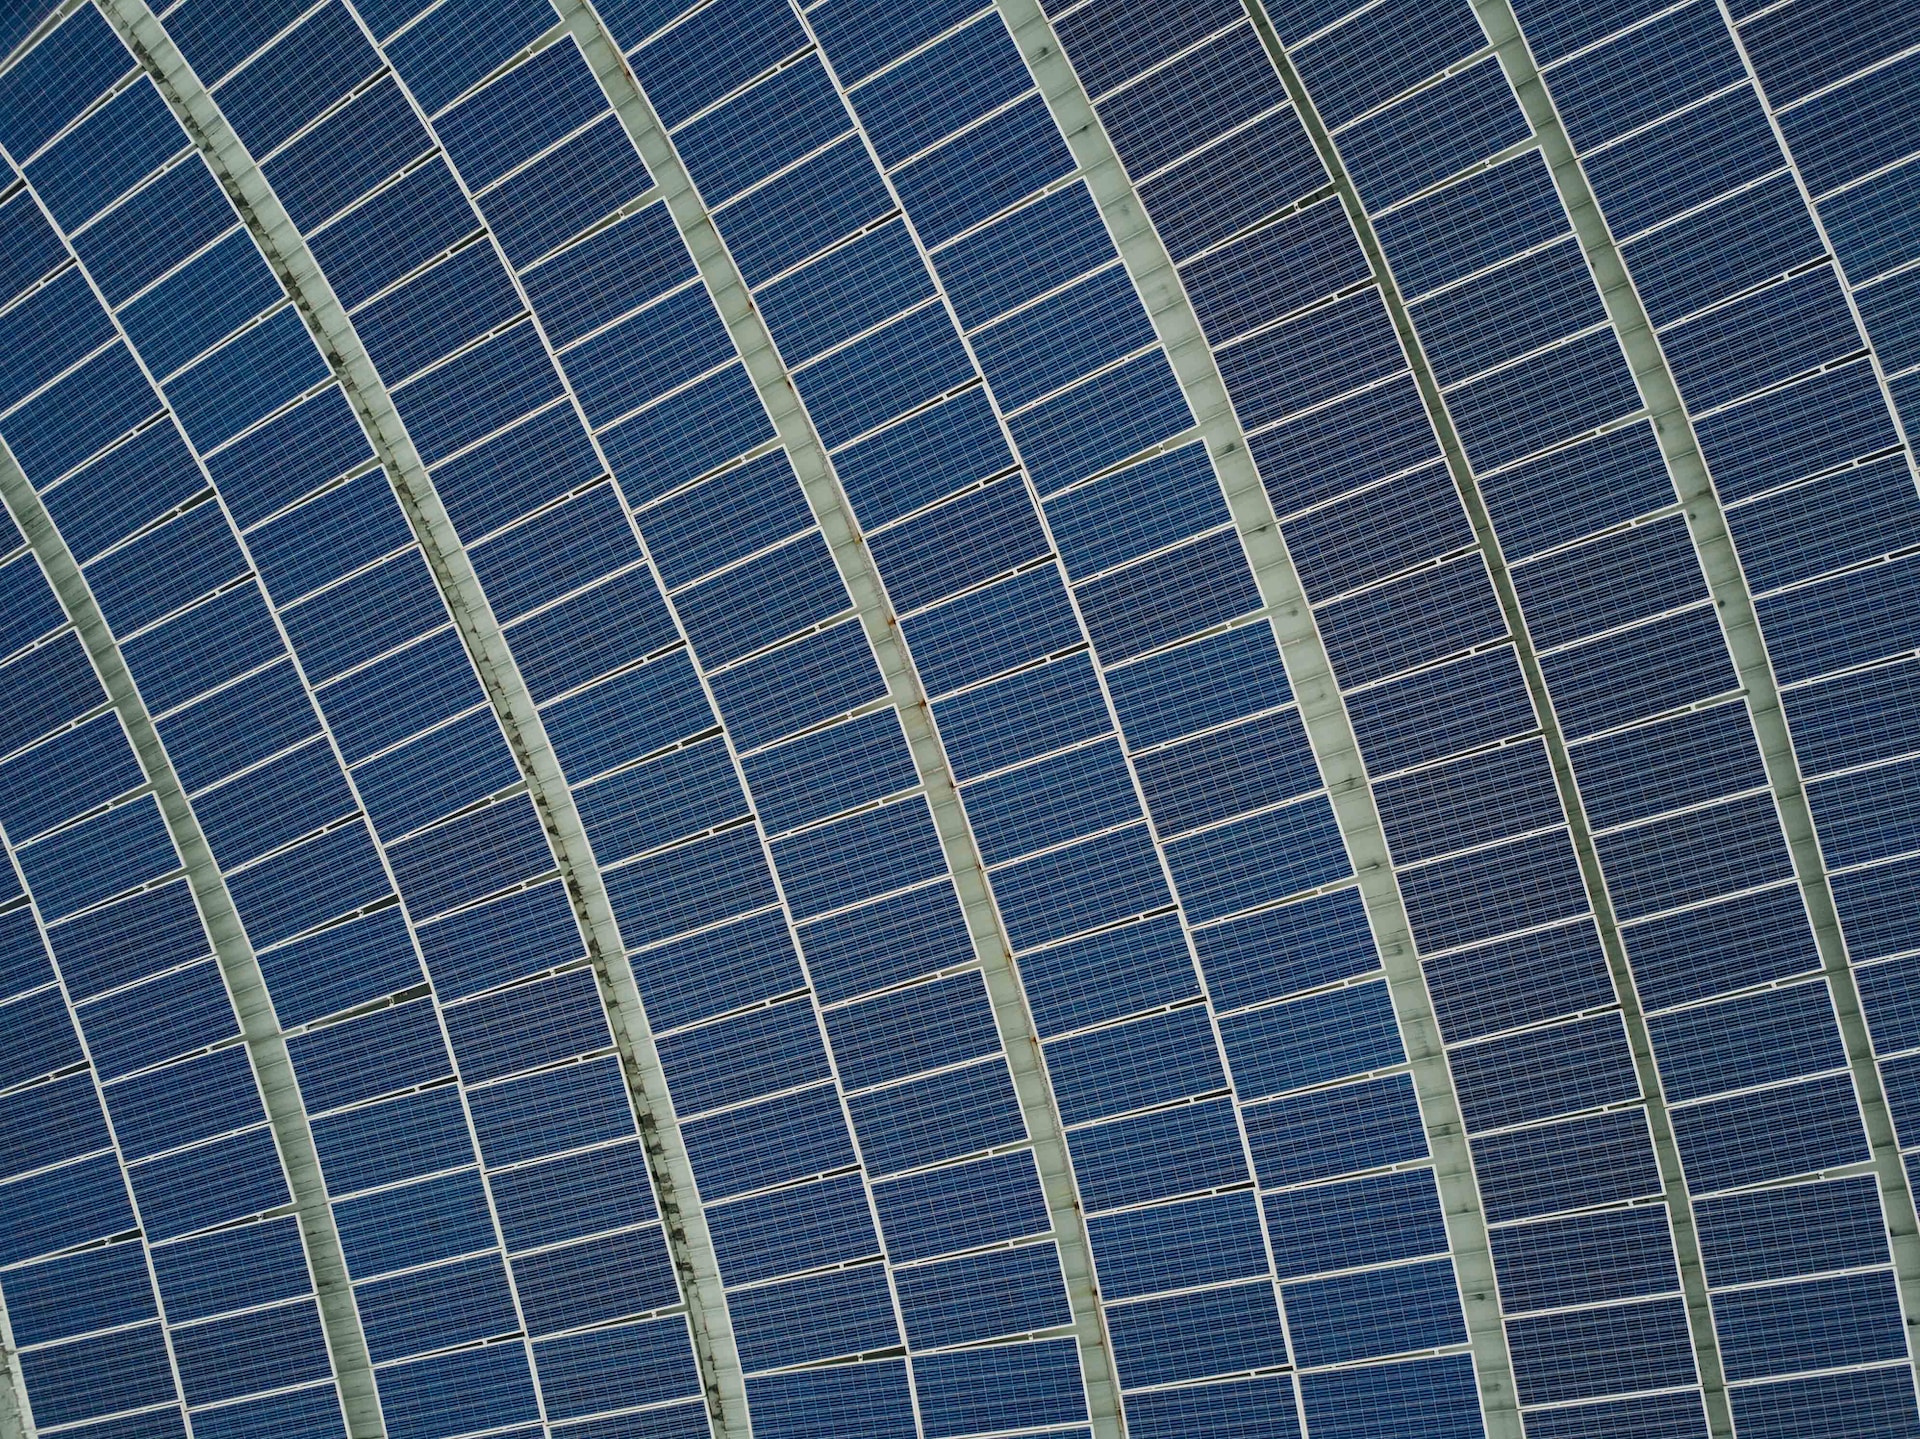 Cel mai mare PPA coporate pentru energie verde din România. nextE va investi 35 de milioane de euro într-o centrală solară